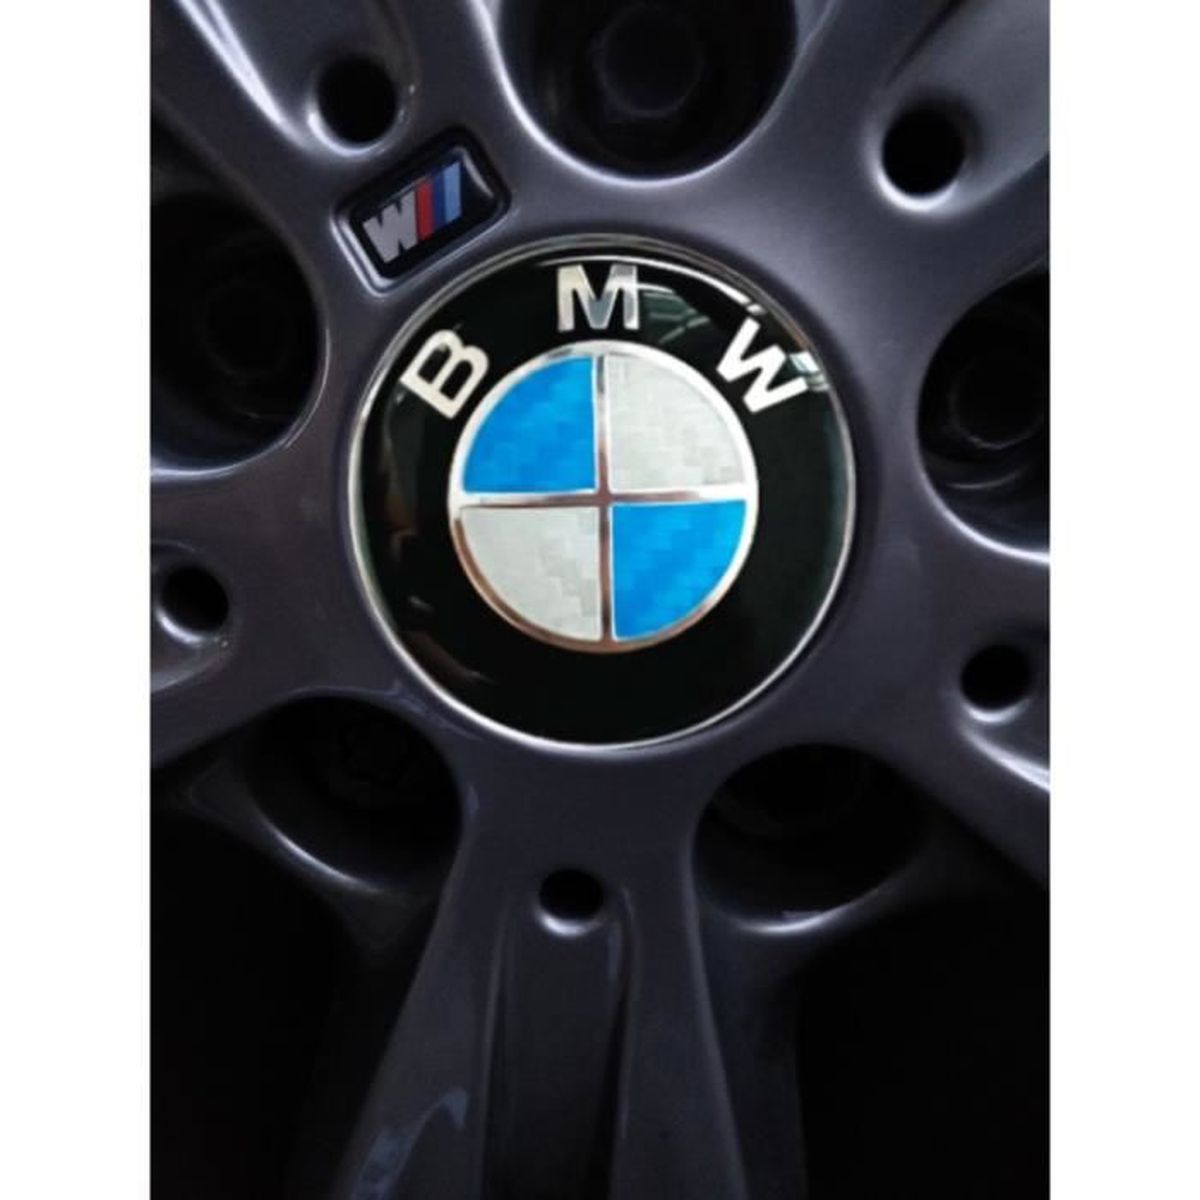 CENTRE DE JANTE D'ORIGINE BMW M-PERFORMANCE POUR JANTE CHROMÉE - 1 PIÈCE -  56MM